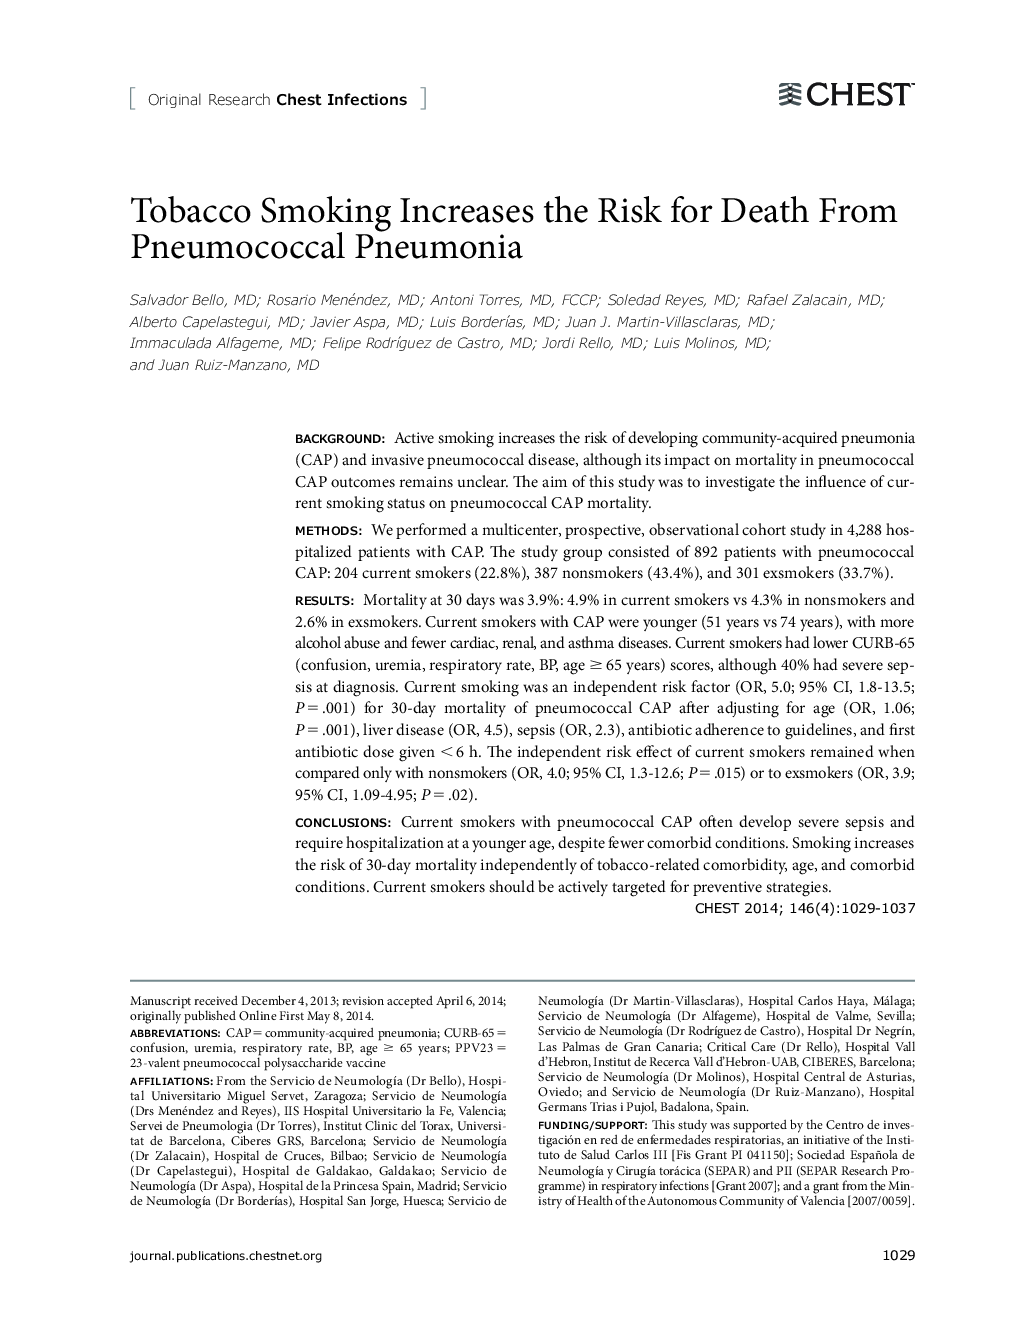 سیگار کشیدن سیگار باعث افزایش خطر مرگ ناشی از پنوموکوک پنومونی می شود 